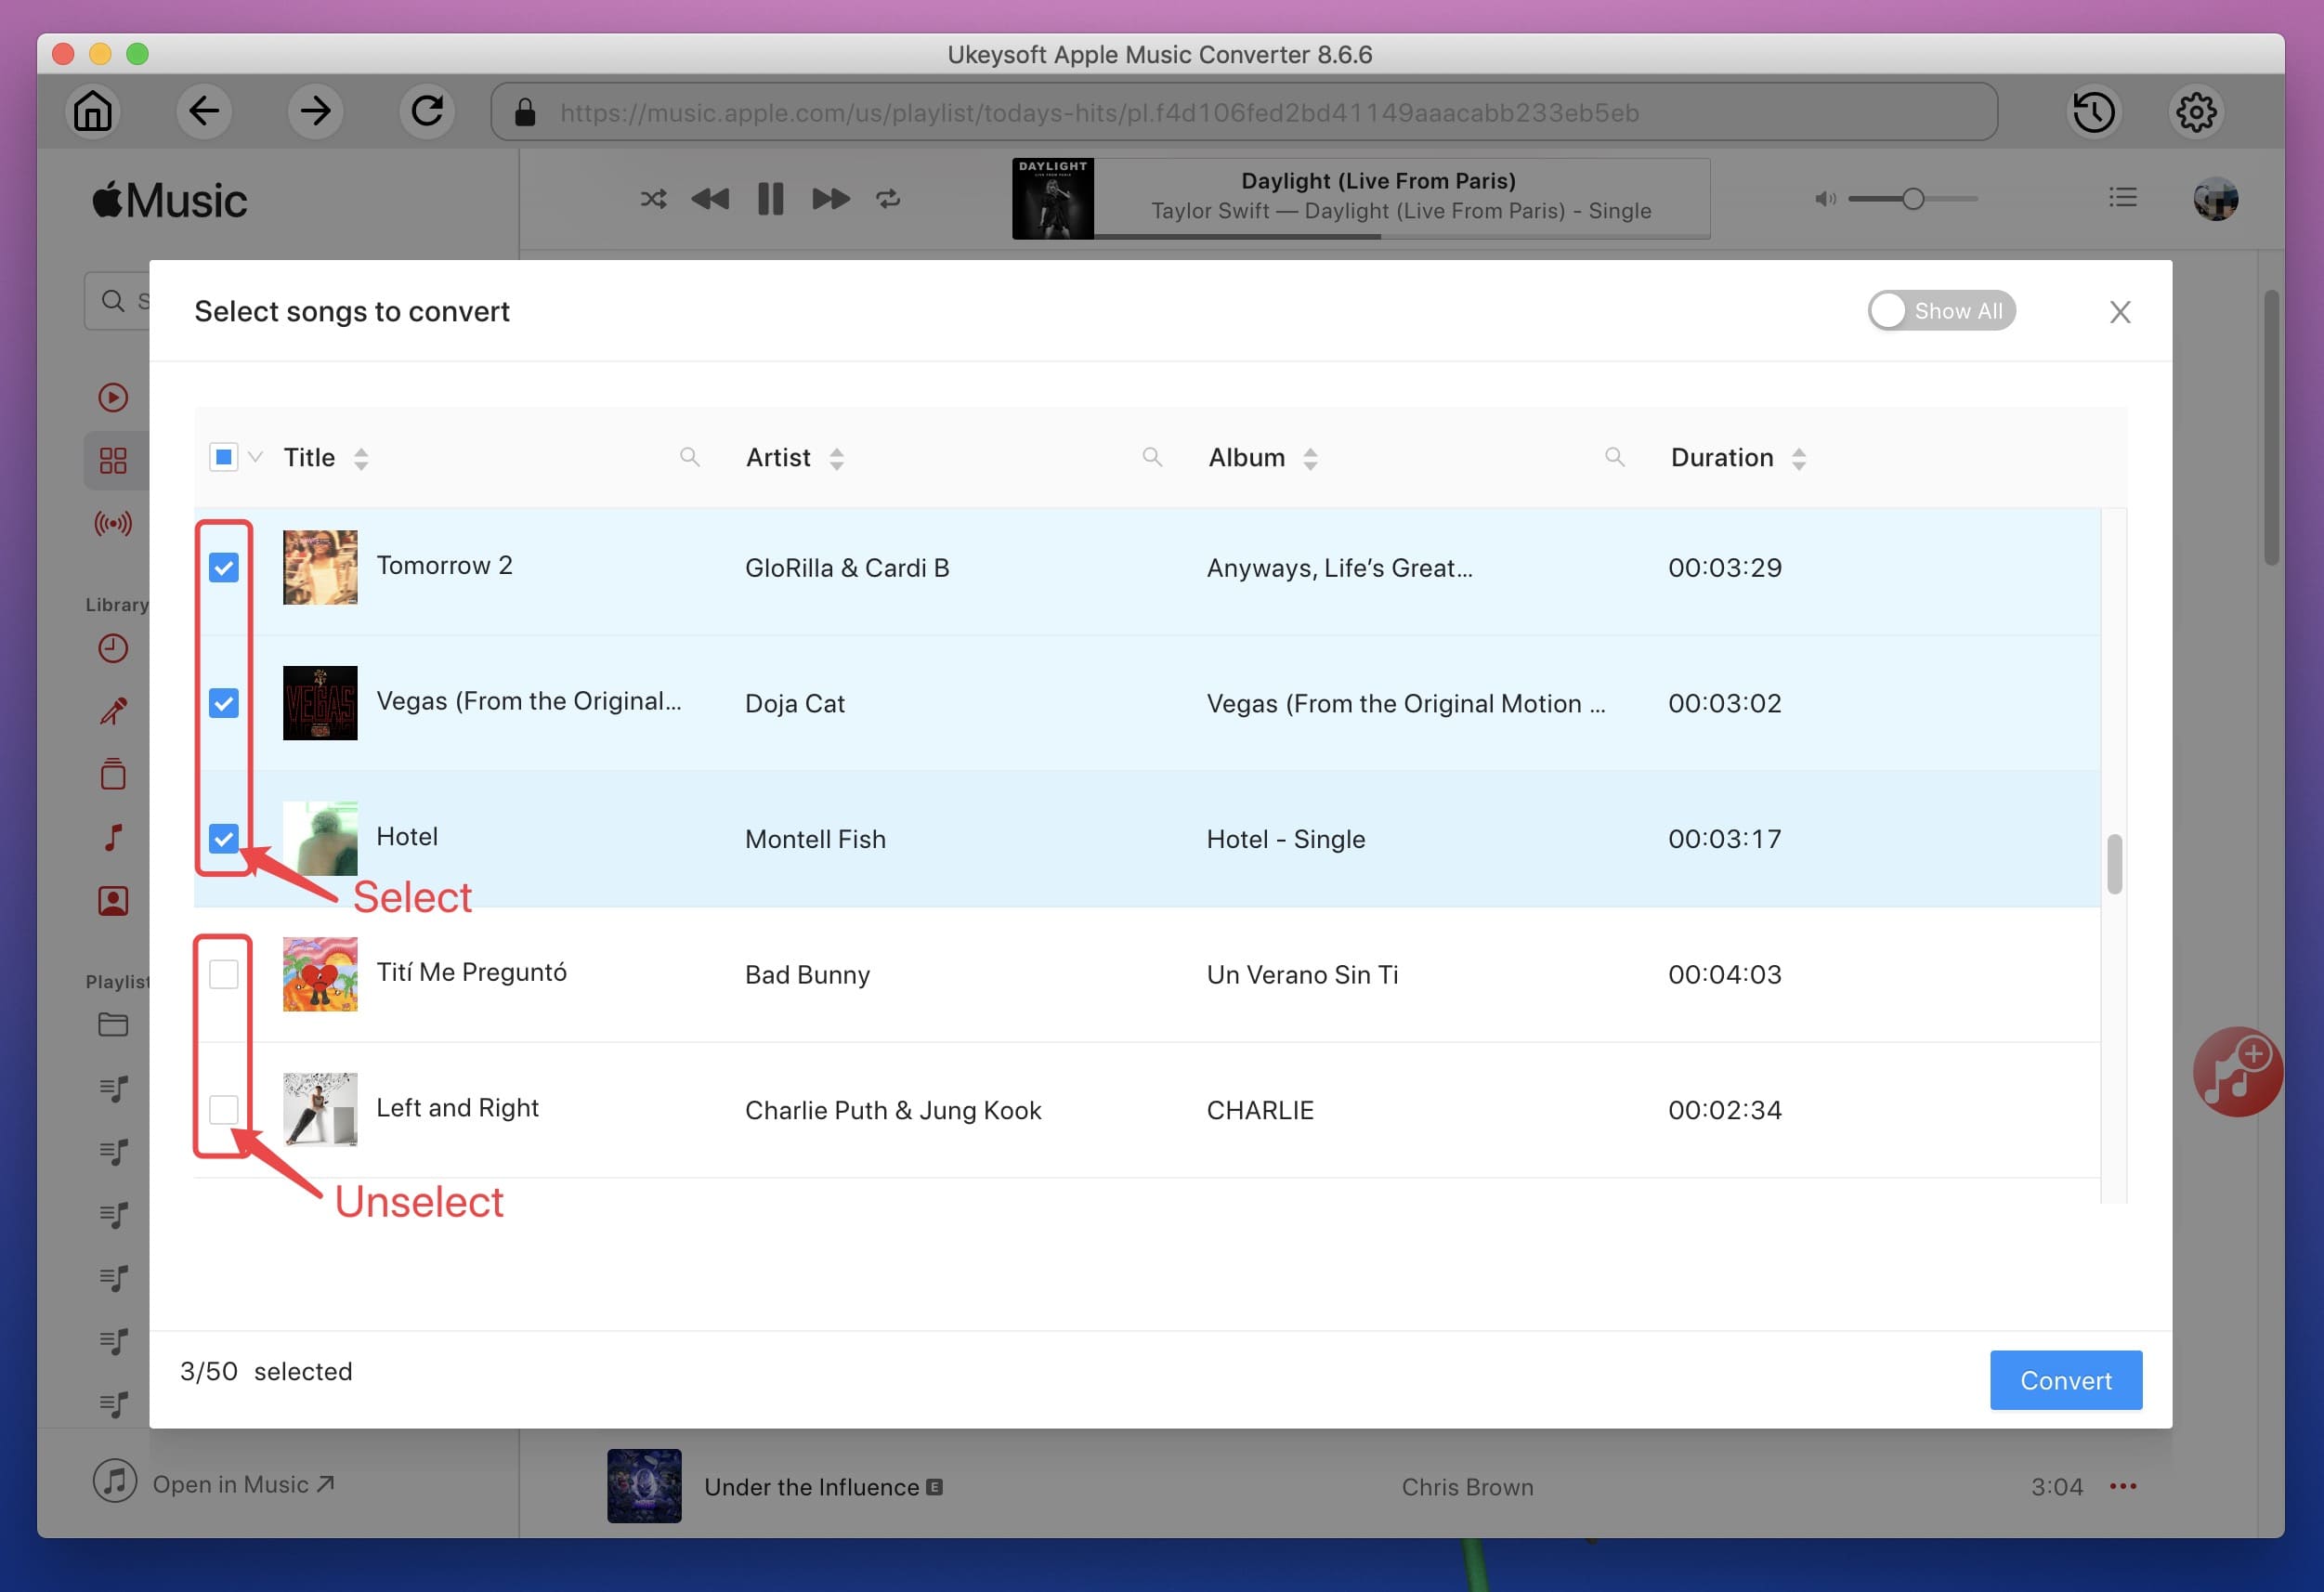 Agregar listas de reproducción de música de Apple al convertidor